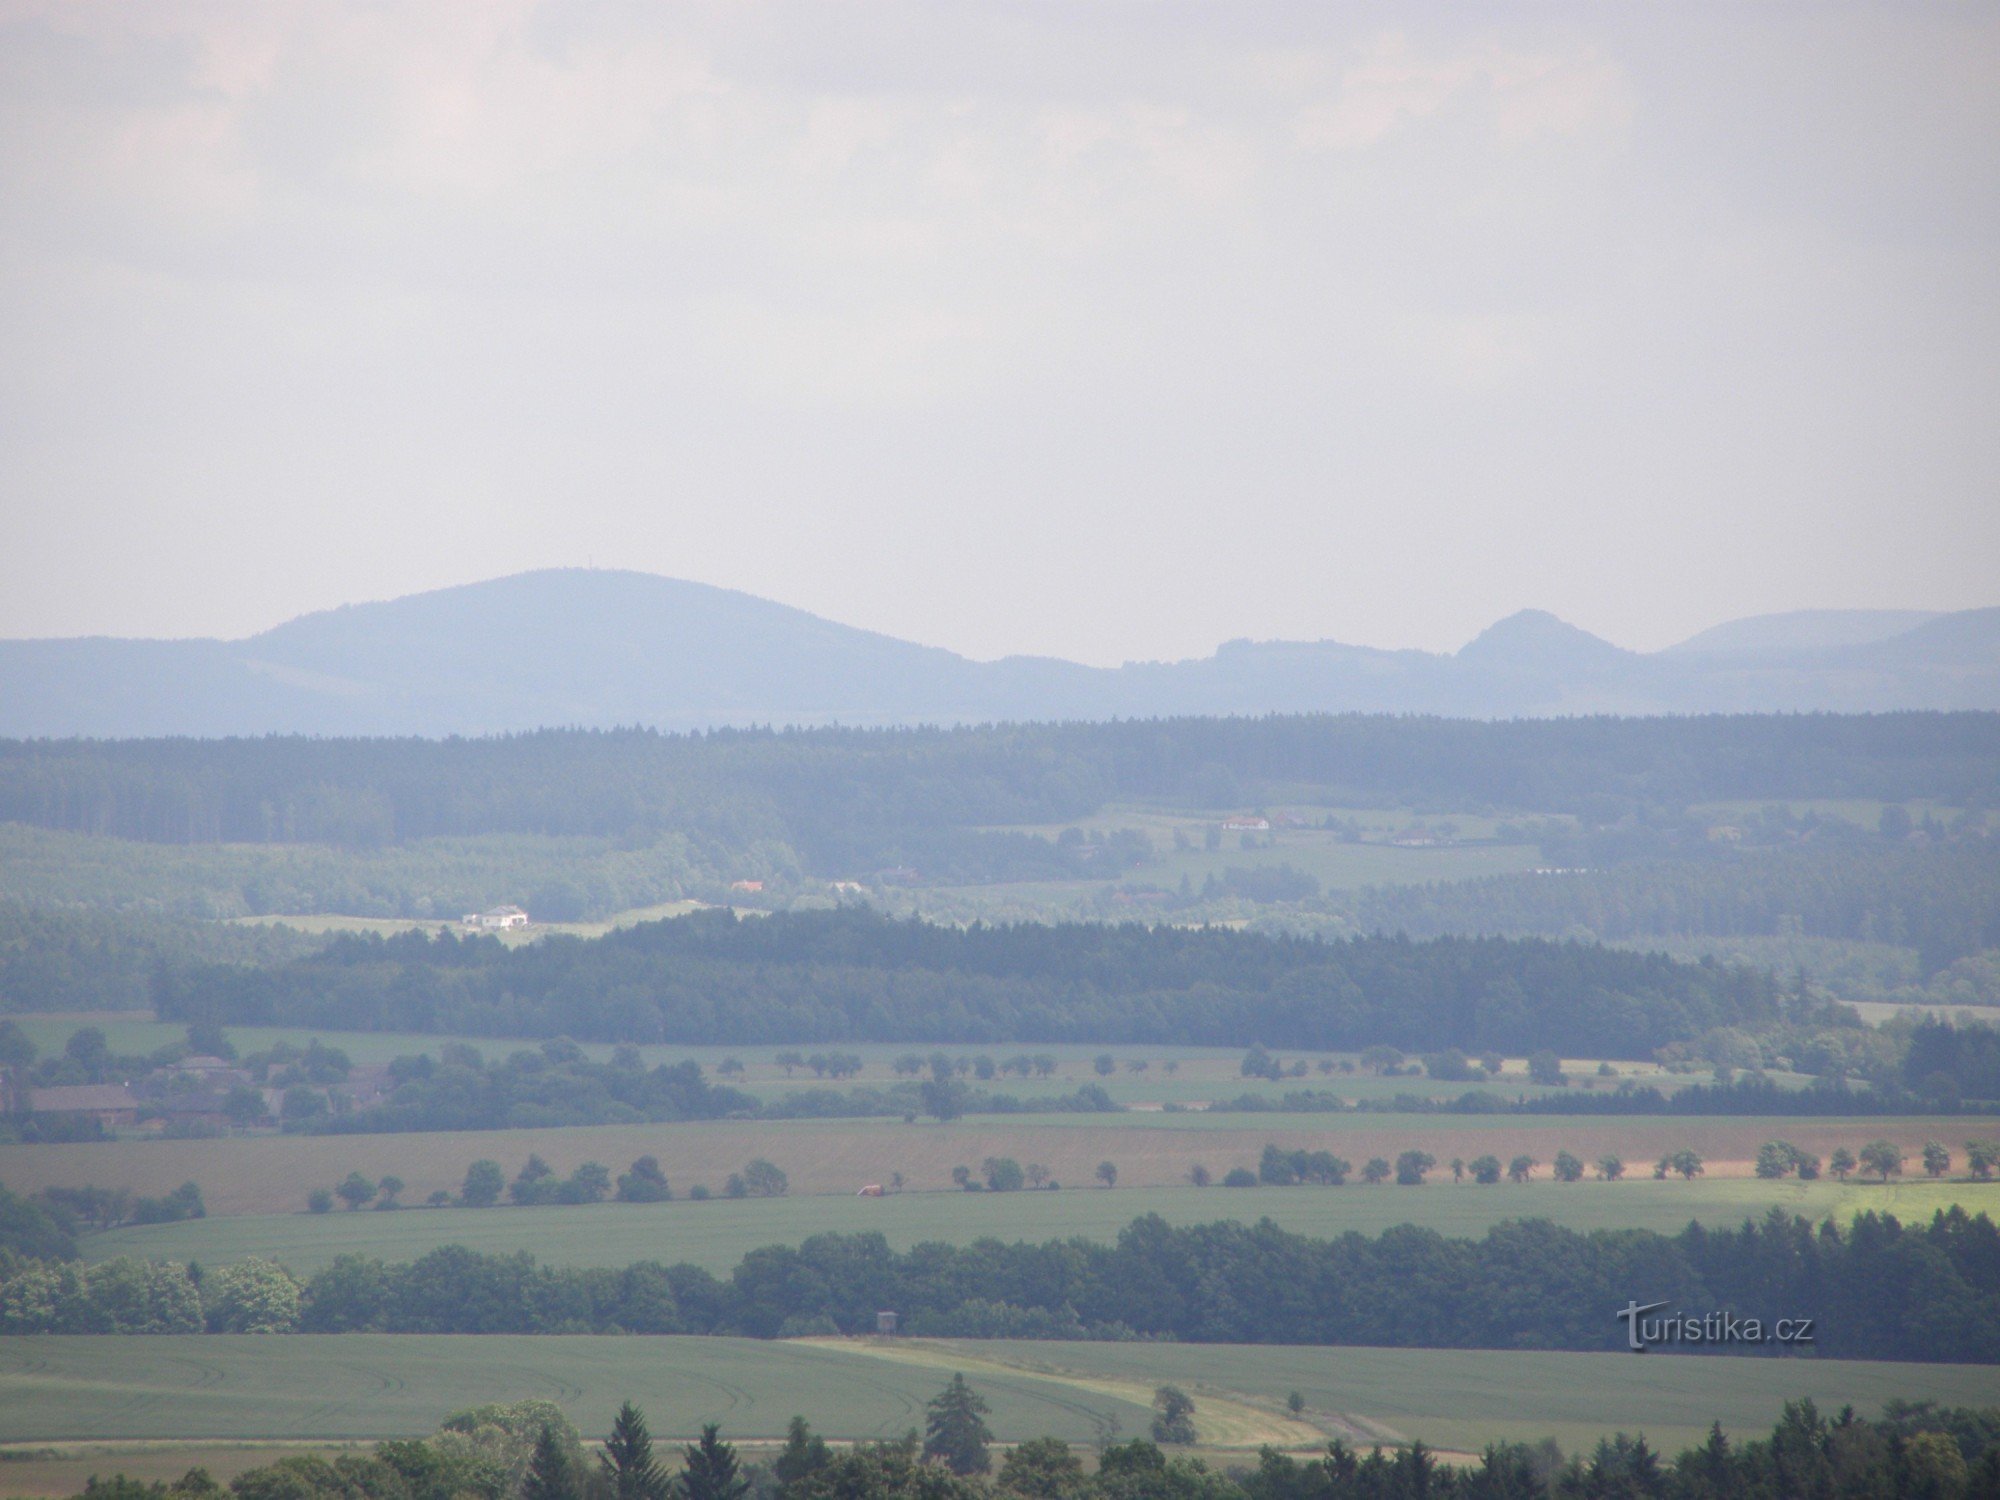 Η άποψη του Barunča κοντά στο Horiček